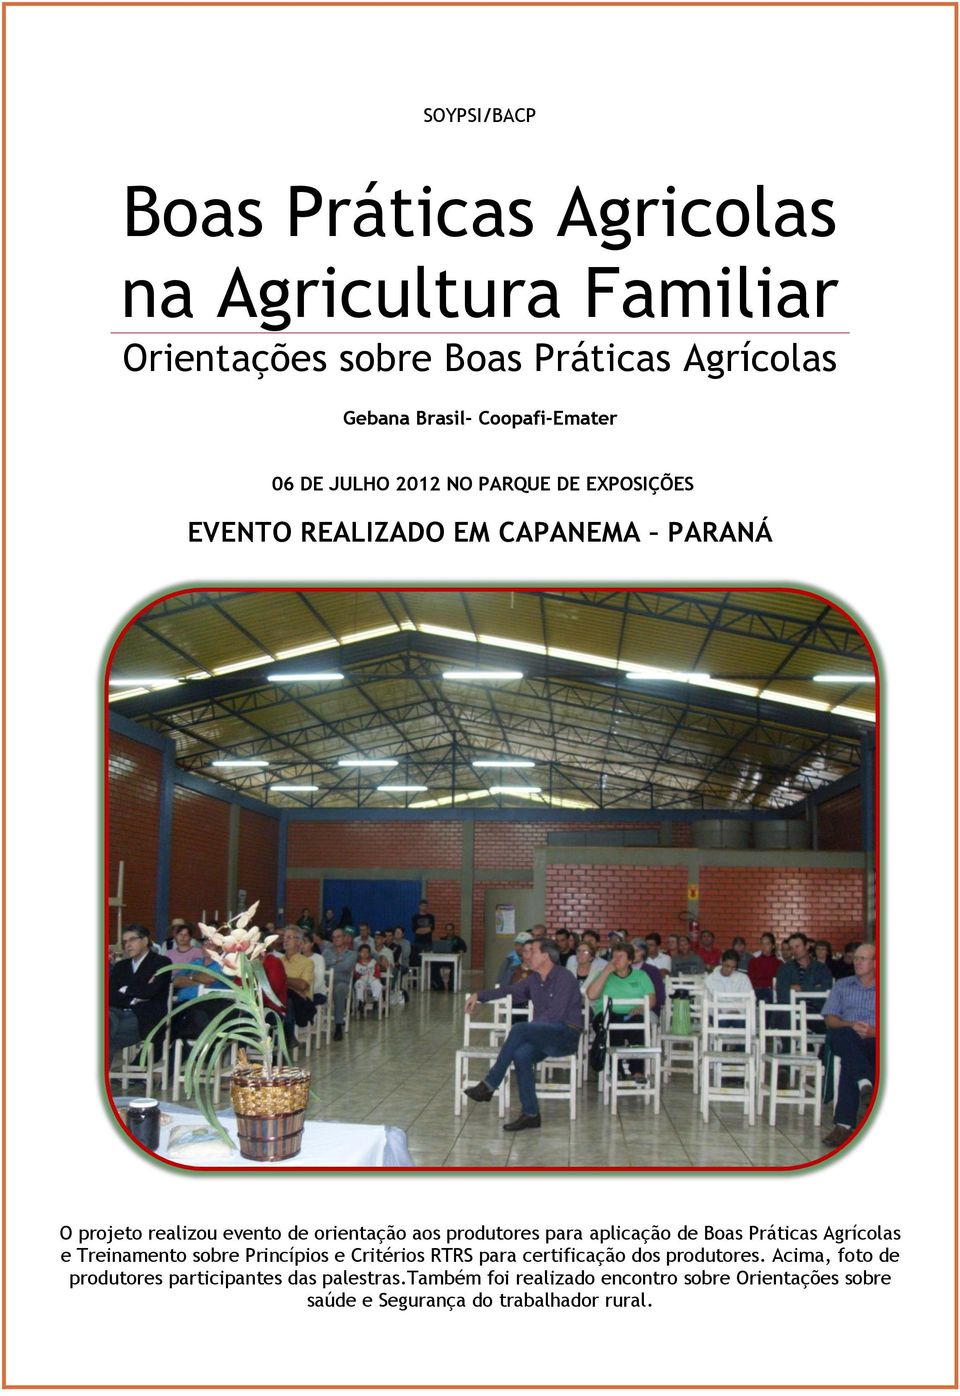 para aplicação de Boas Práticas Agrícolas e Treinamento sobre Princípios e Critérios RTRS para certificação dos produtores.